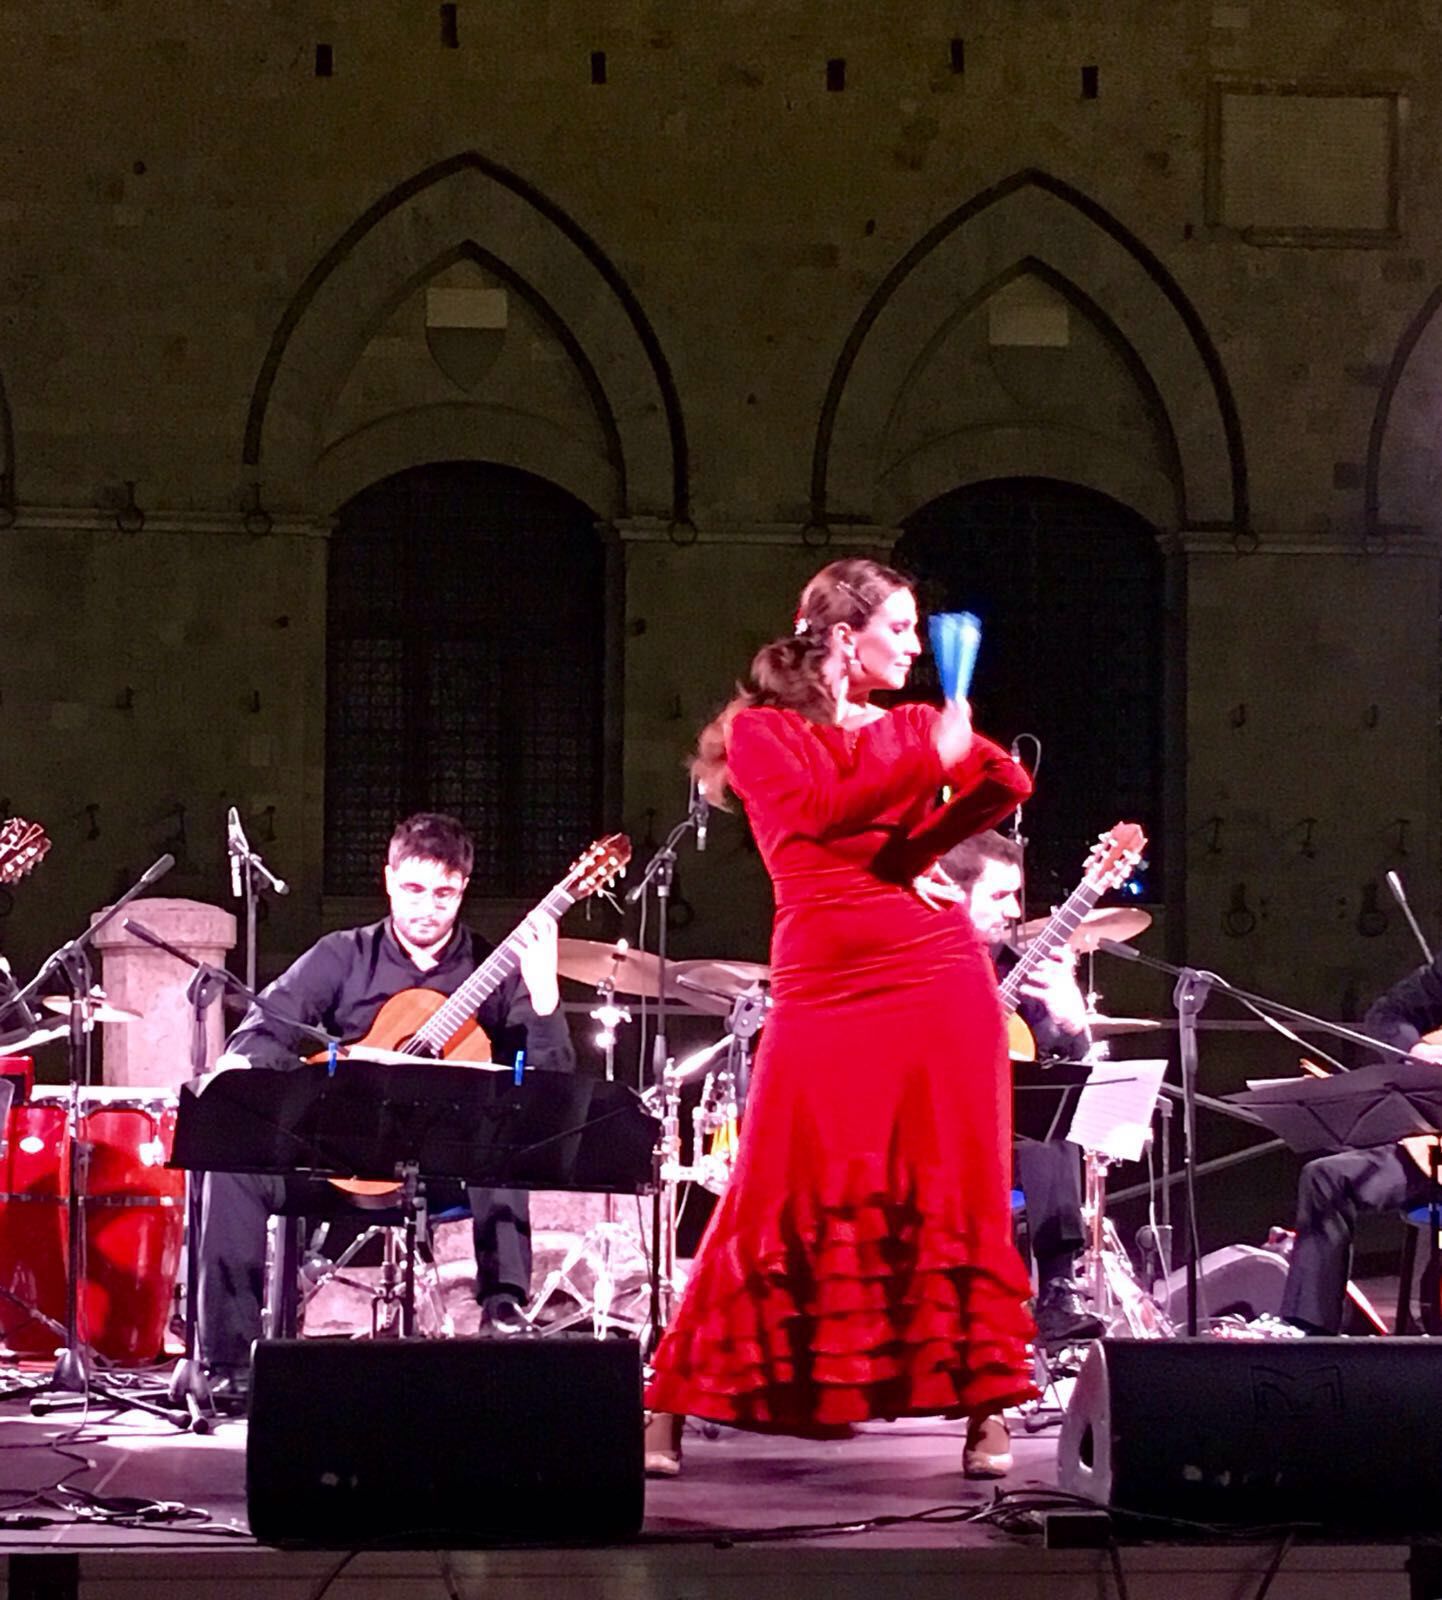 9 settembre a Siena, flamenco in piazza del campo con chitarra e baile dal vivo